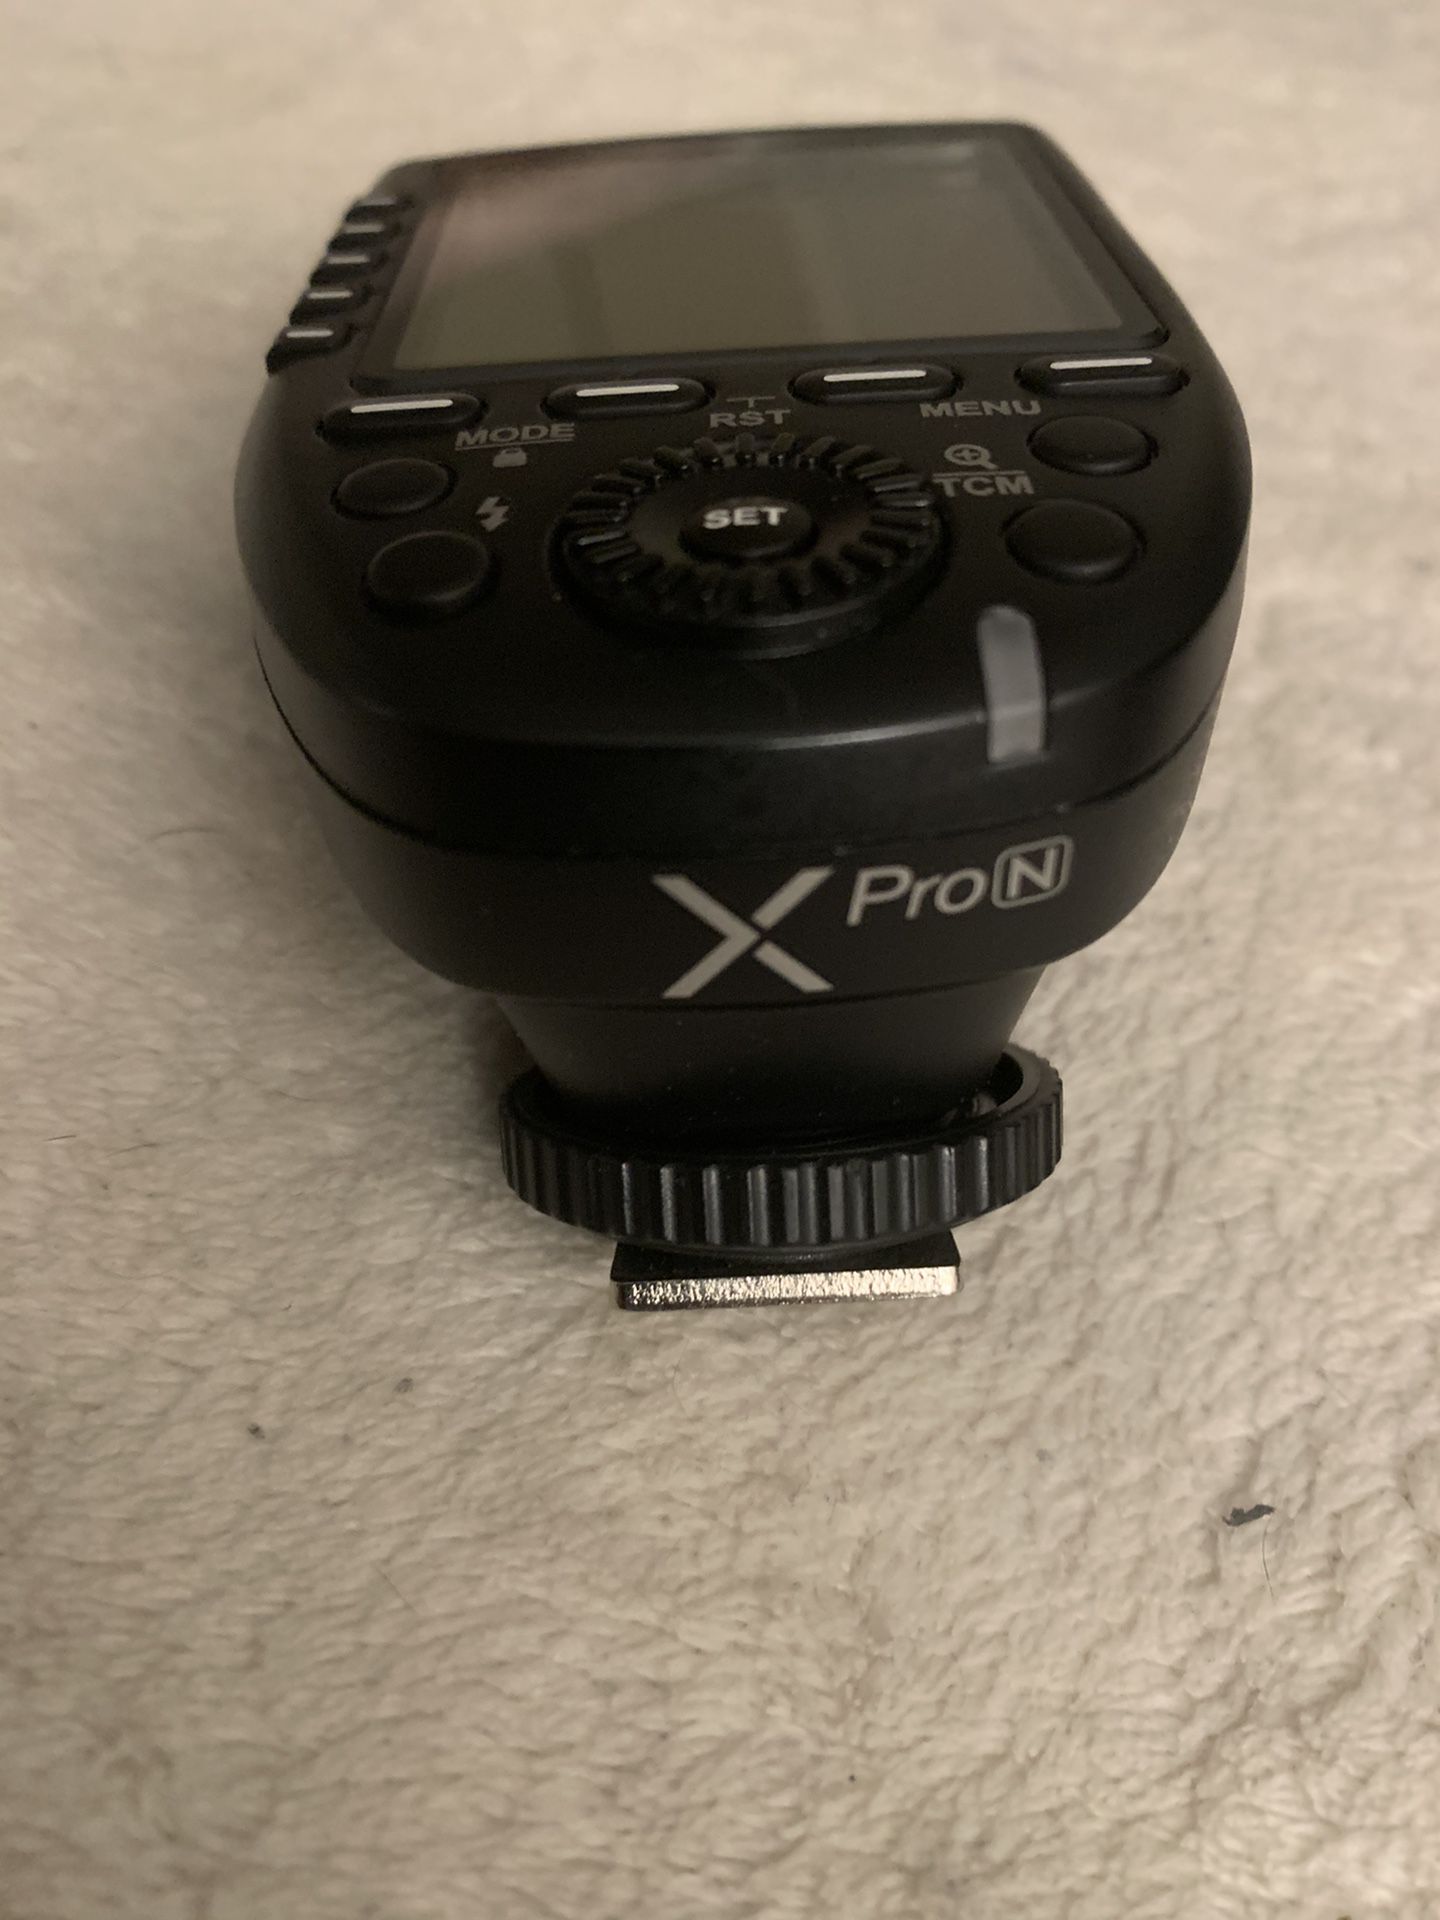 GODOX Xpro Trigger (Nikon)